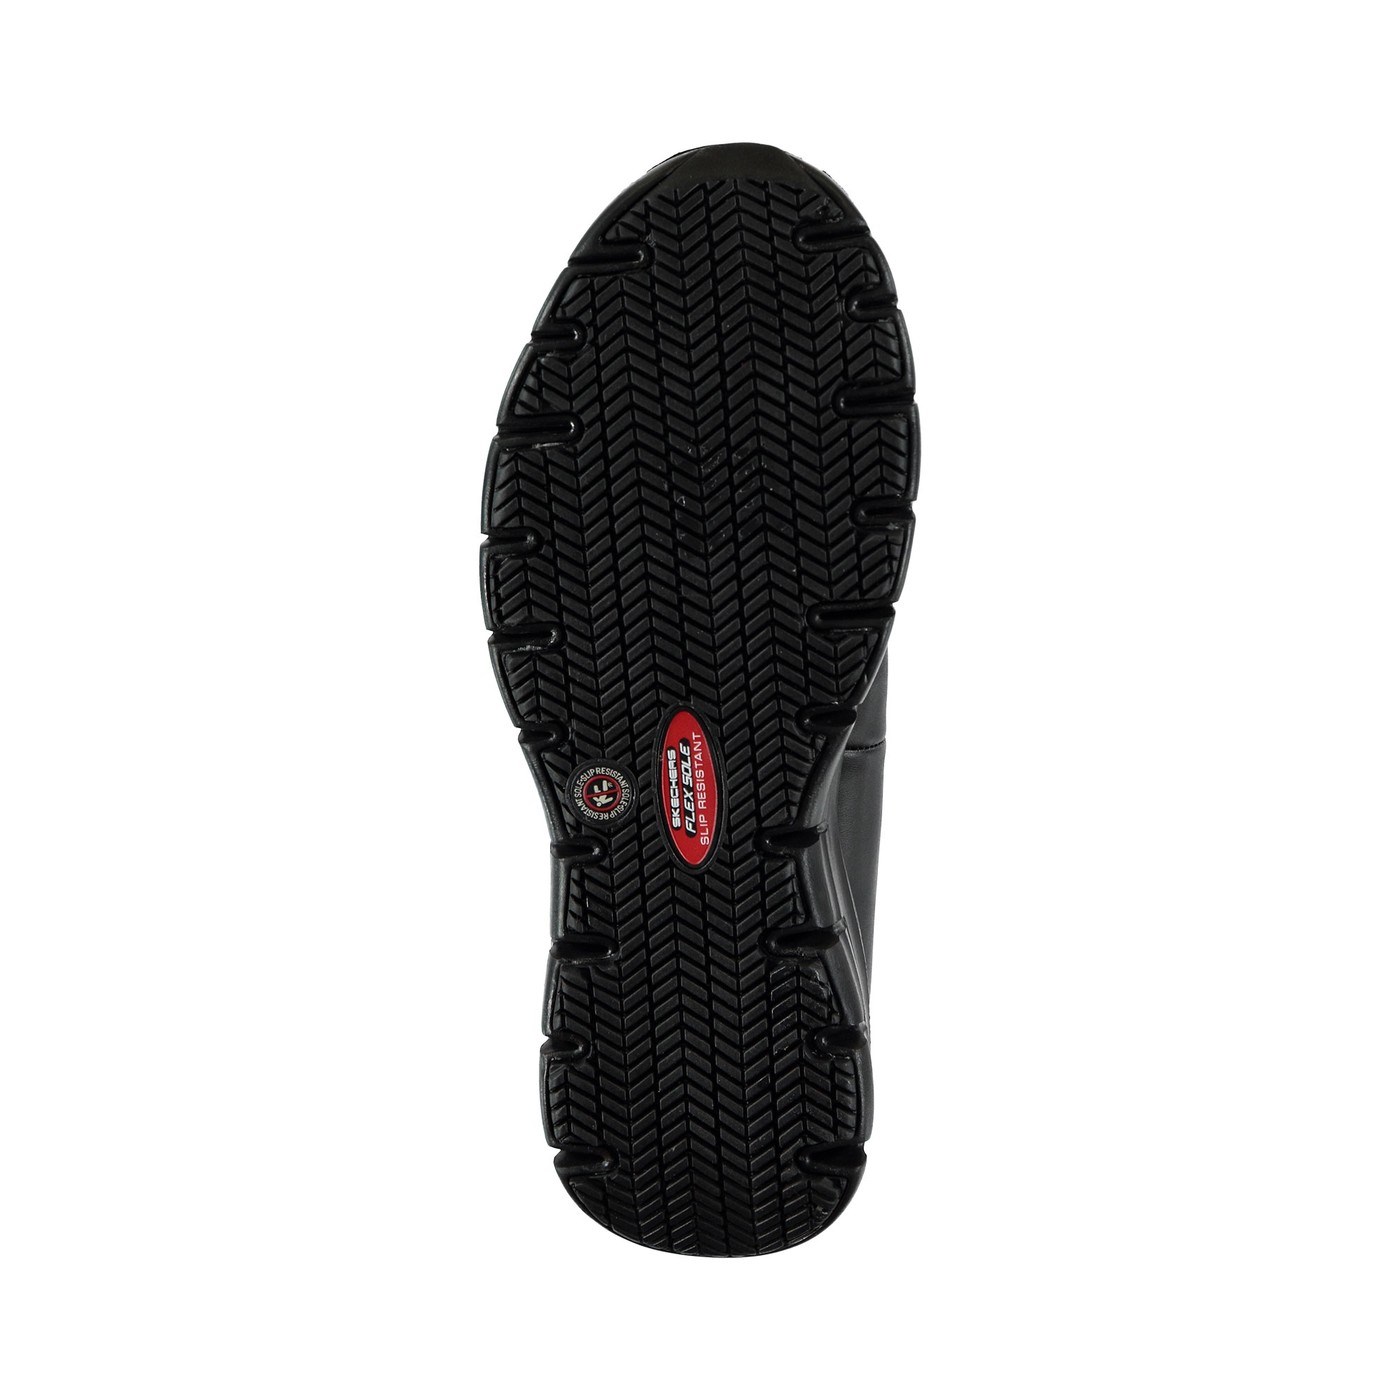 Skechers Kadın Ayakkabı 88888118 Siyah